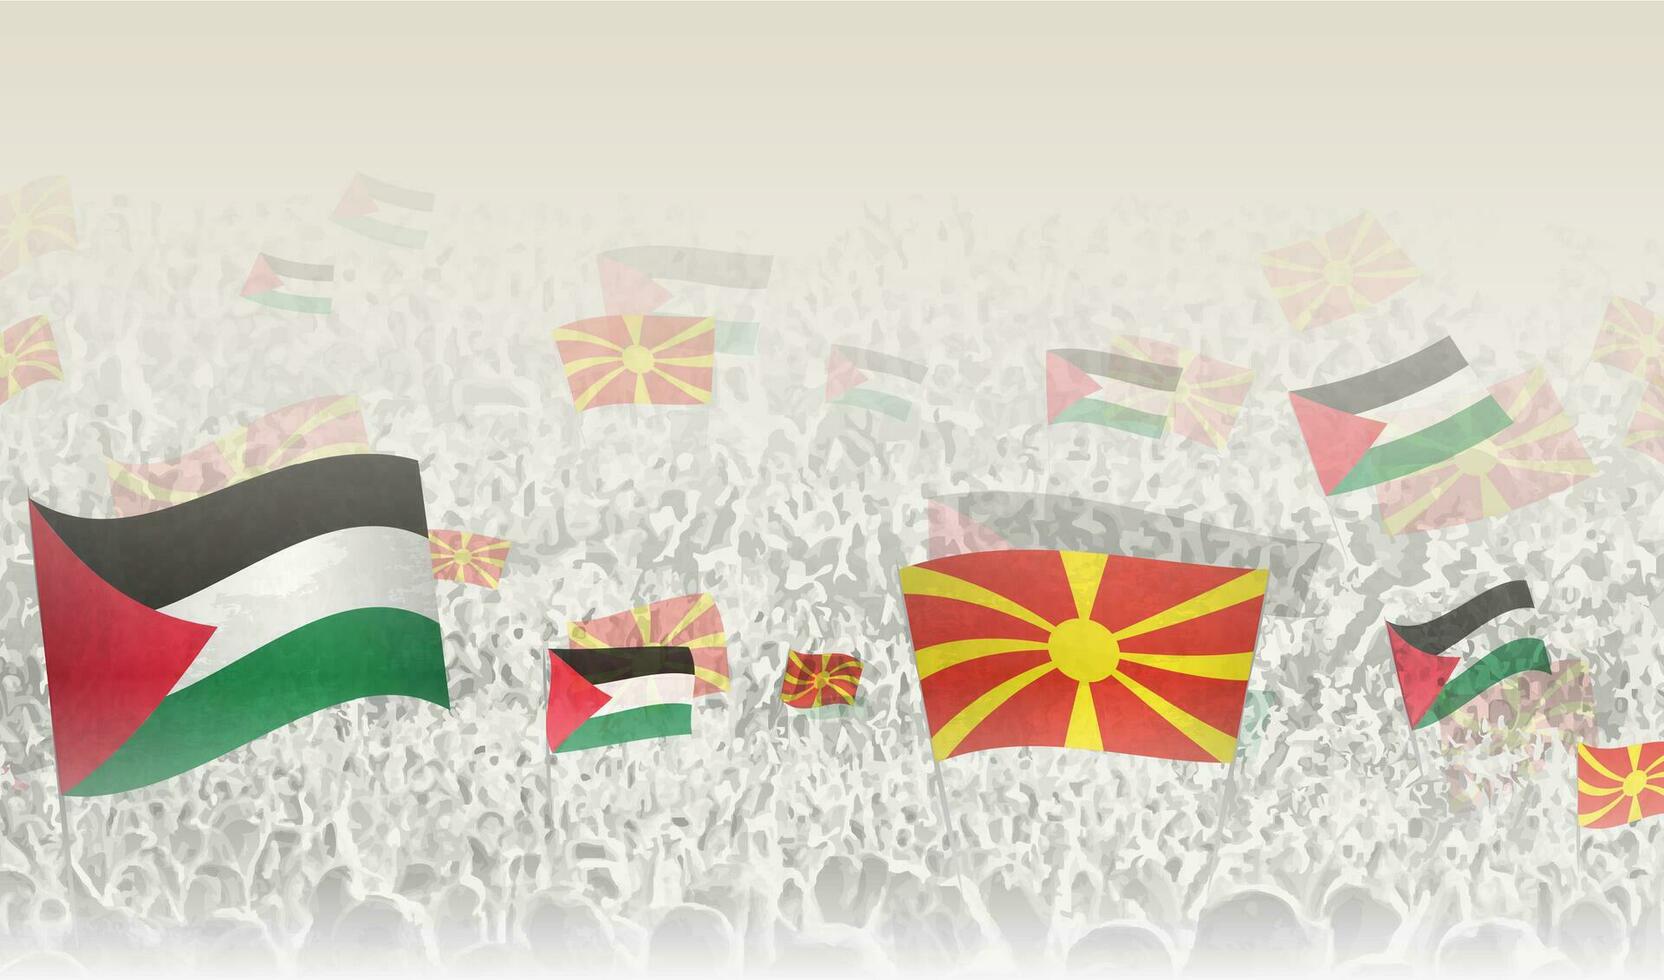 Palästina und Norden Mazedonien Flaggen im ein Menge von Jubel Personen. vektor